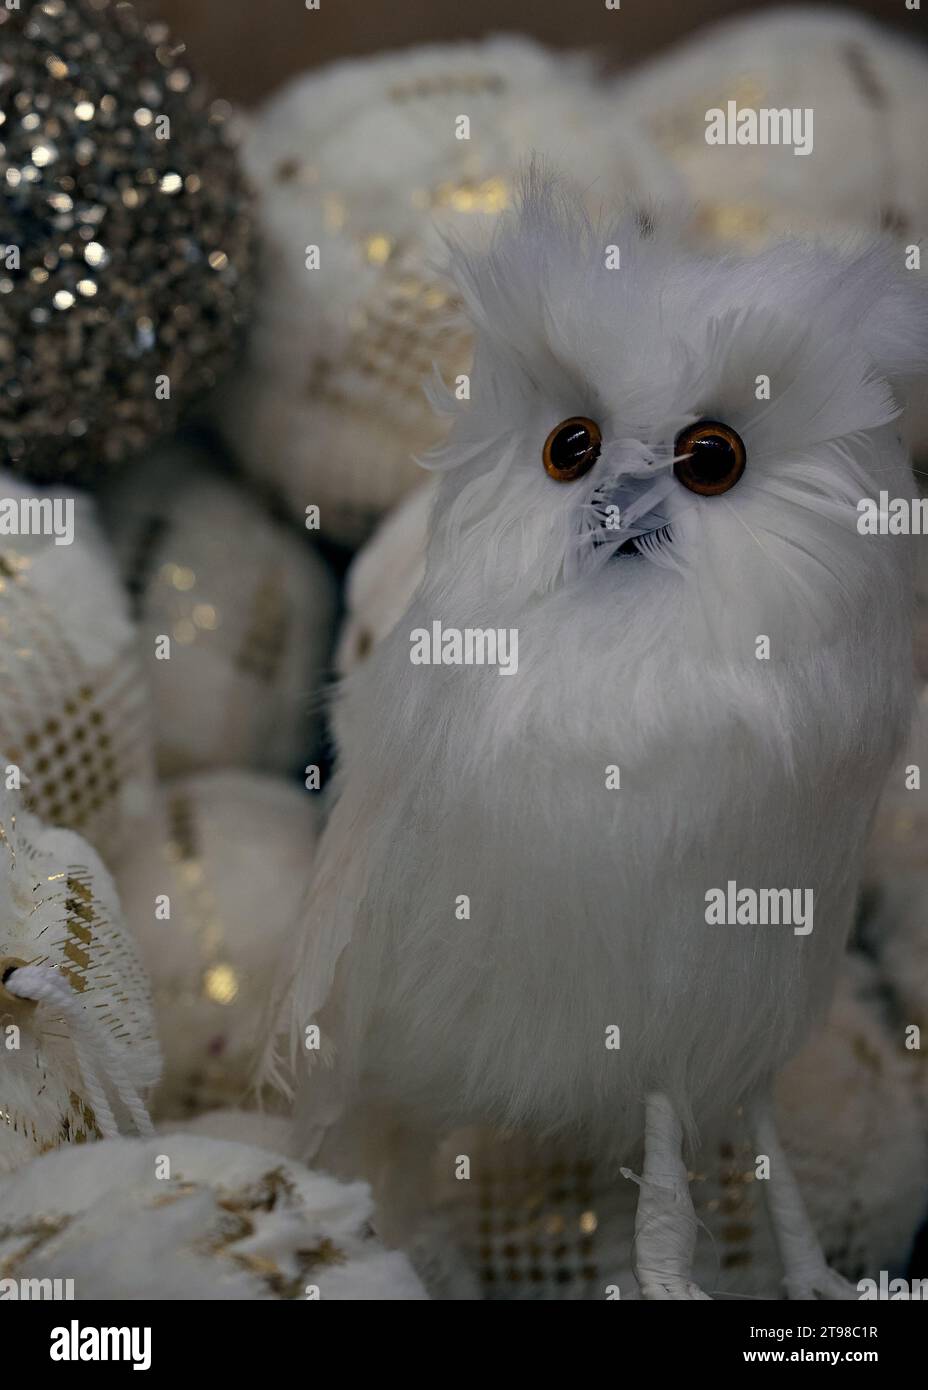 Un piccolo gufo bianco soffice con grandi occhi rotondi seduto in una scatola con le palle di Natale. Decorazioni natalizie. Foto Stock